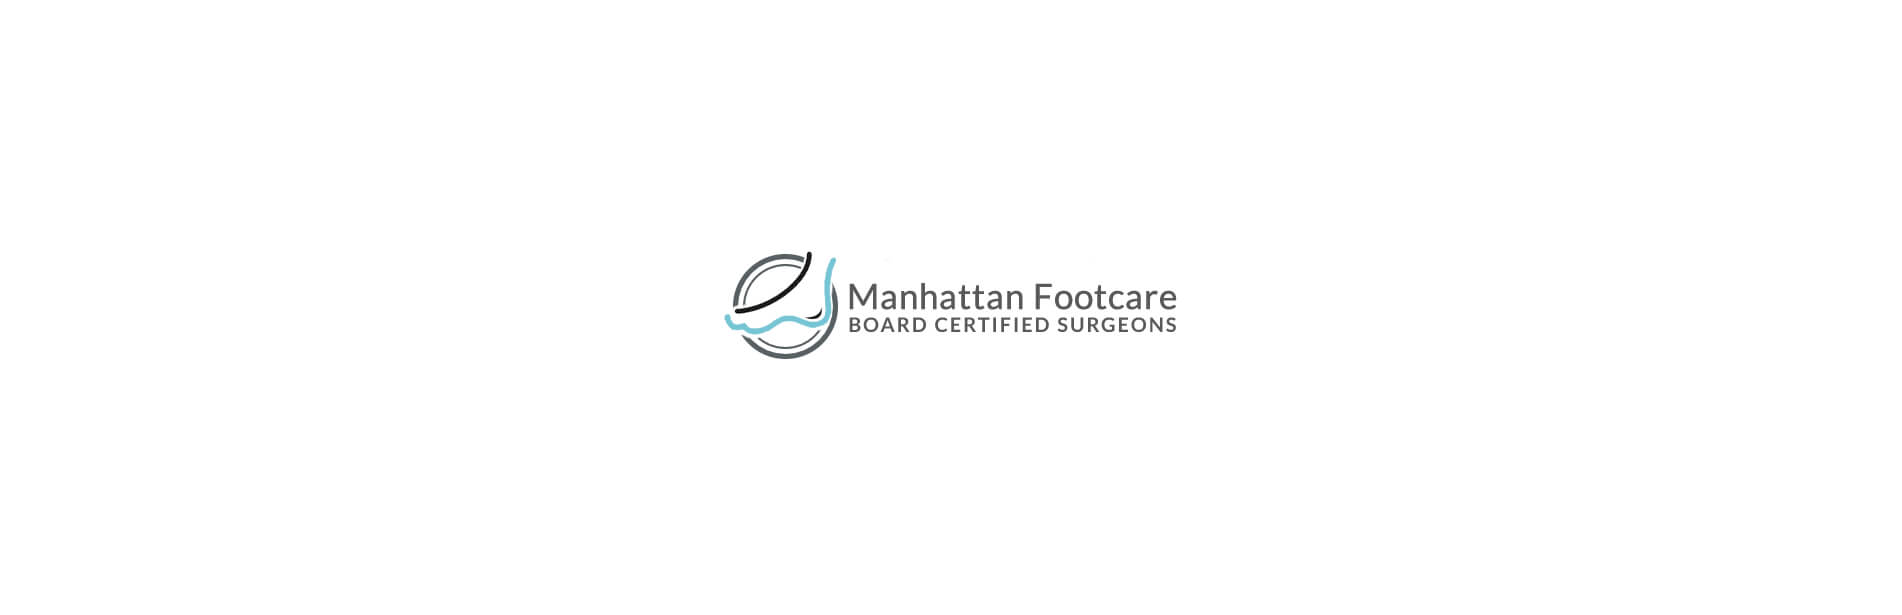 Family Foot Care in the New York, NY 10016 and Brooklyn, NY 11201 areas